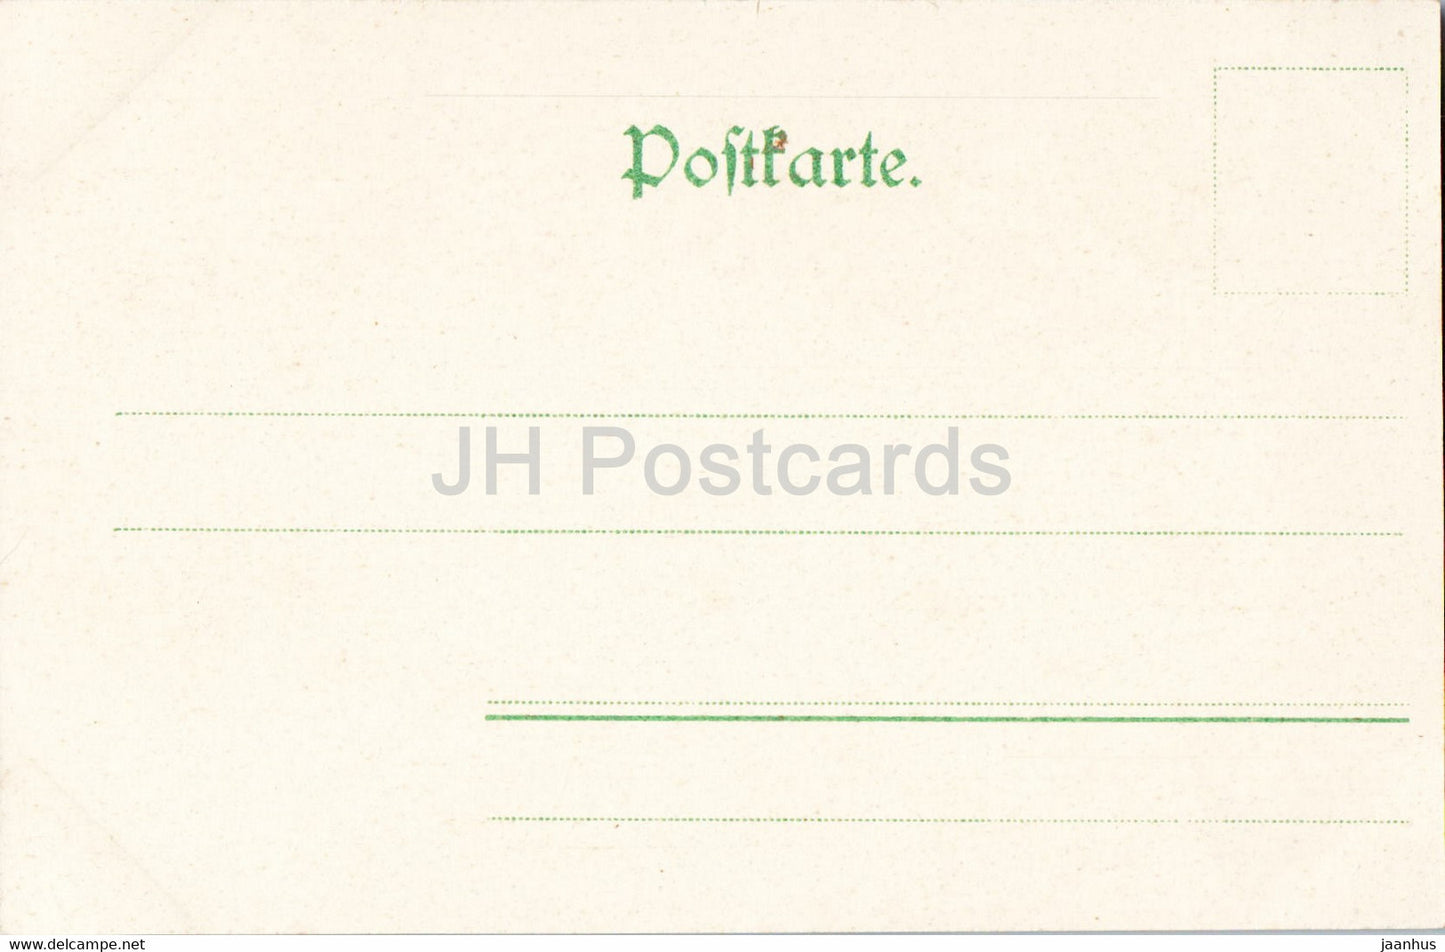 Basteibrucke mit Kieselackfelsen - 197 - old postcard - Germany - unused